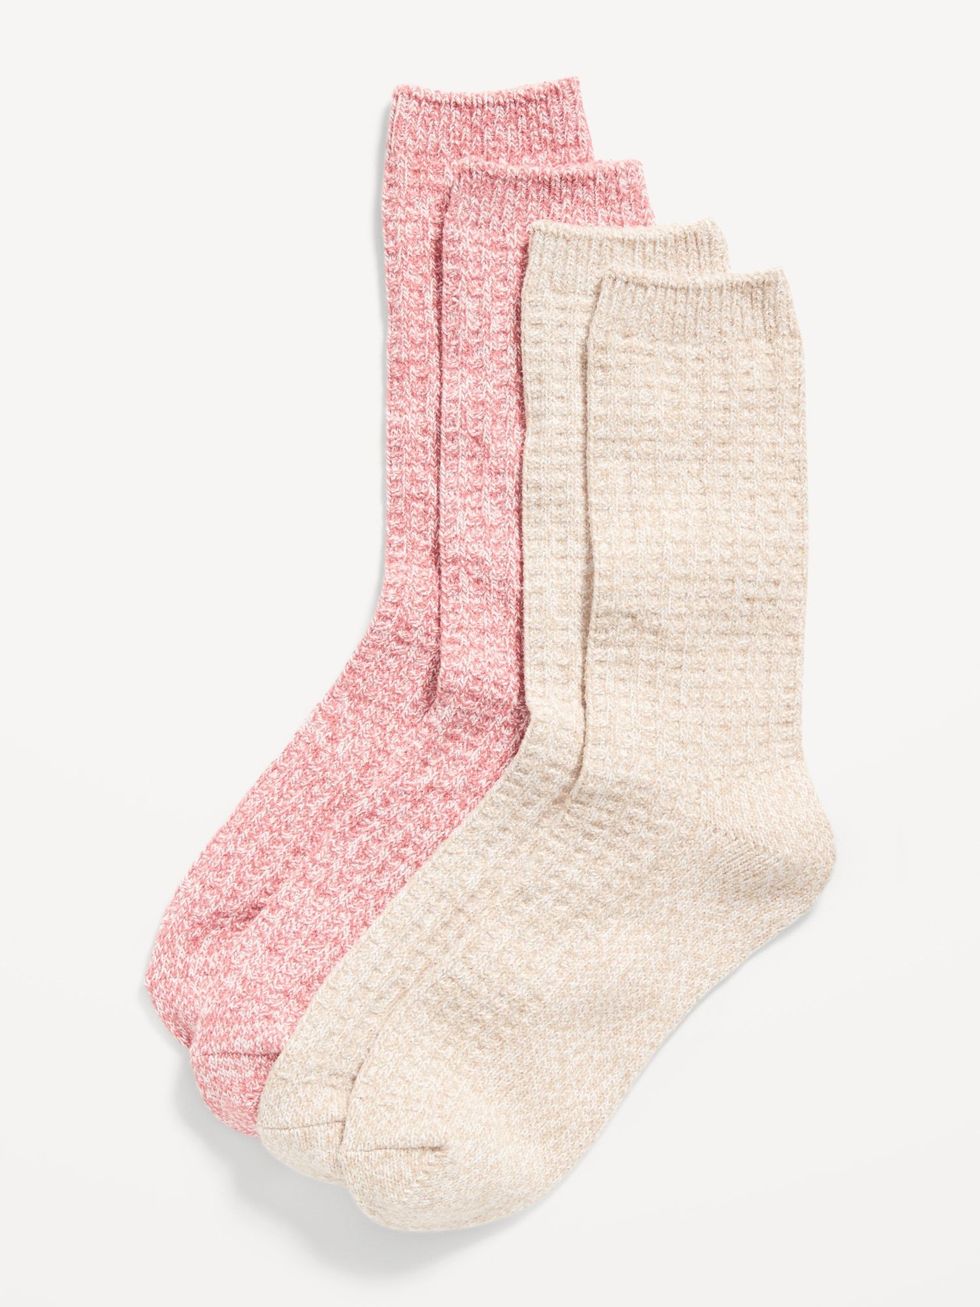 Toddler Girls Rainbow Heart Cozy Socks 2-Pack